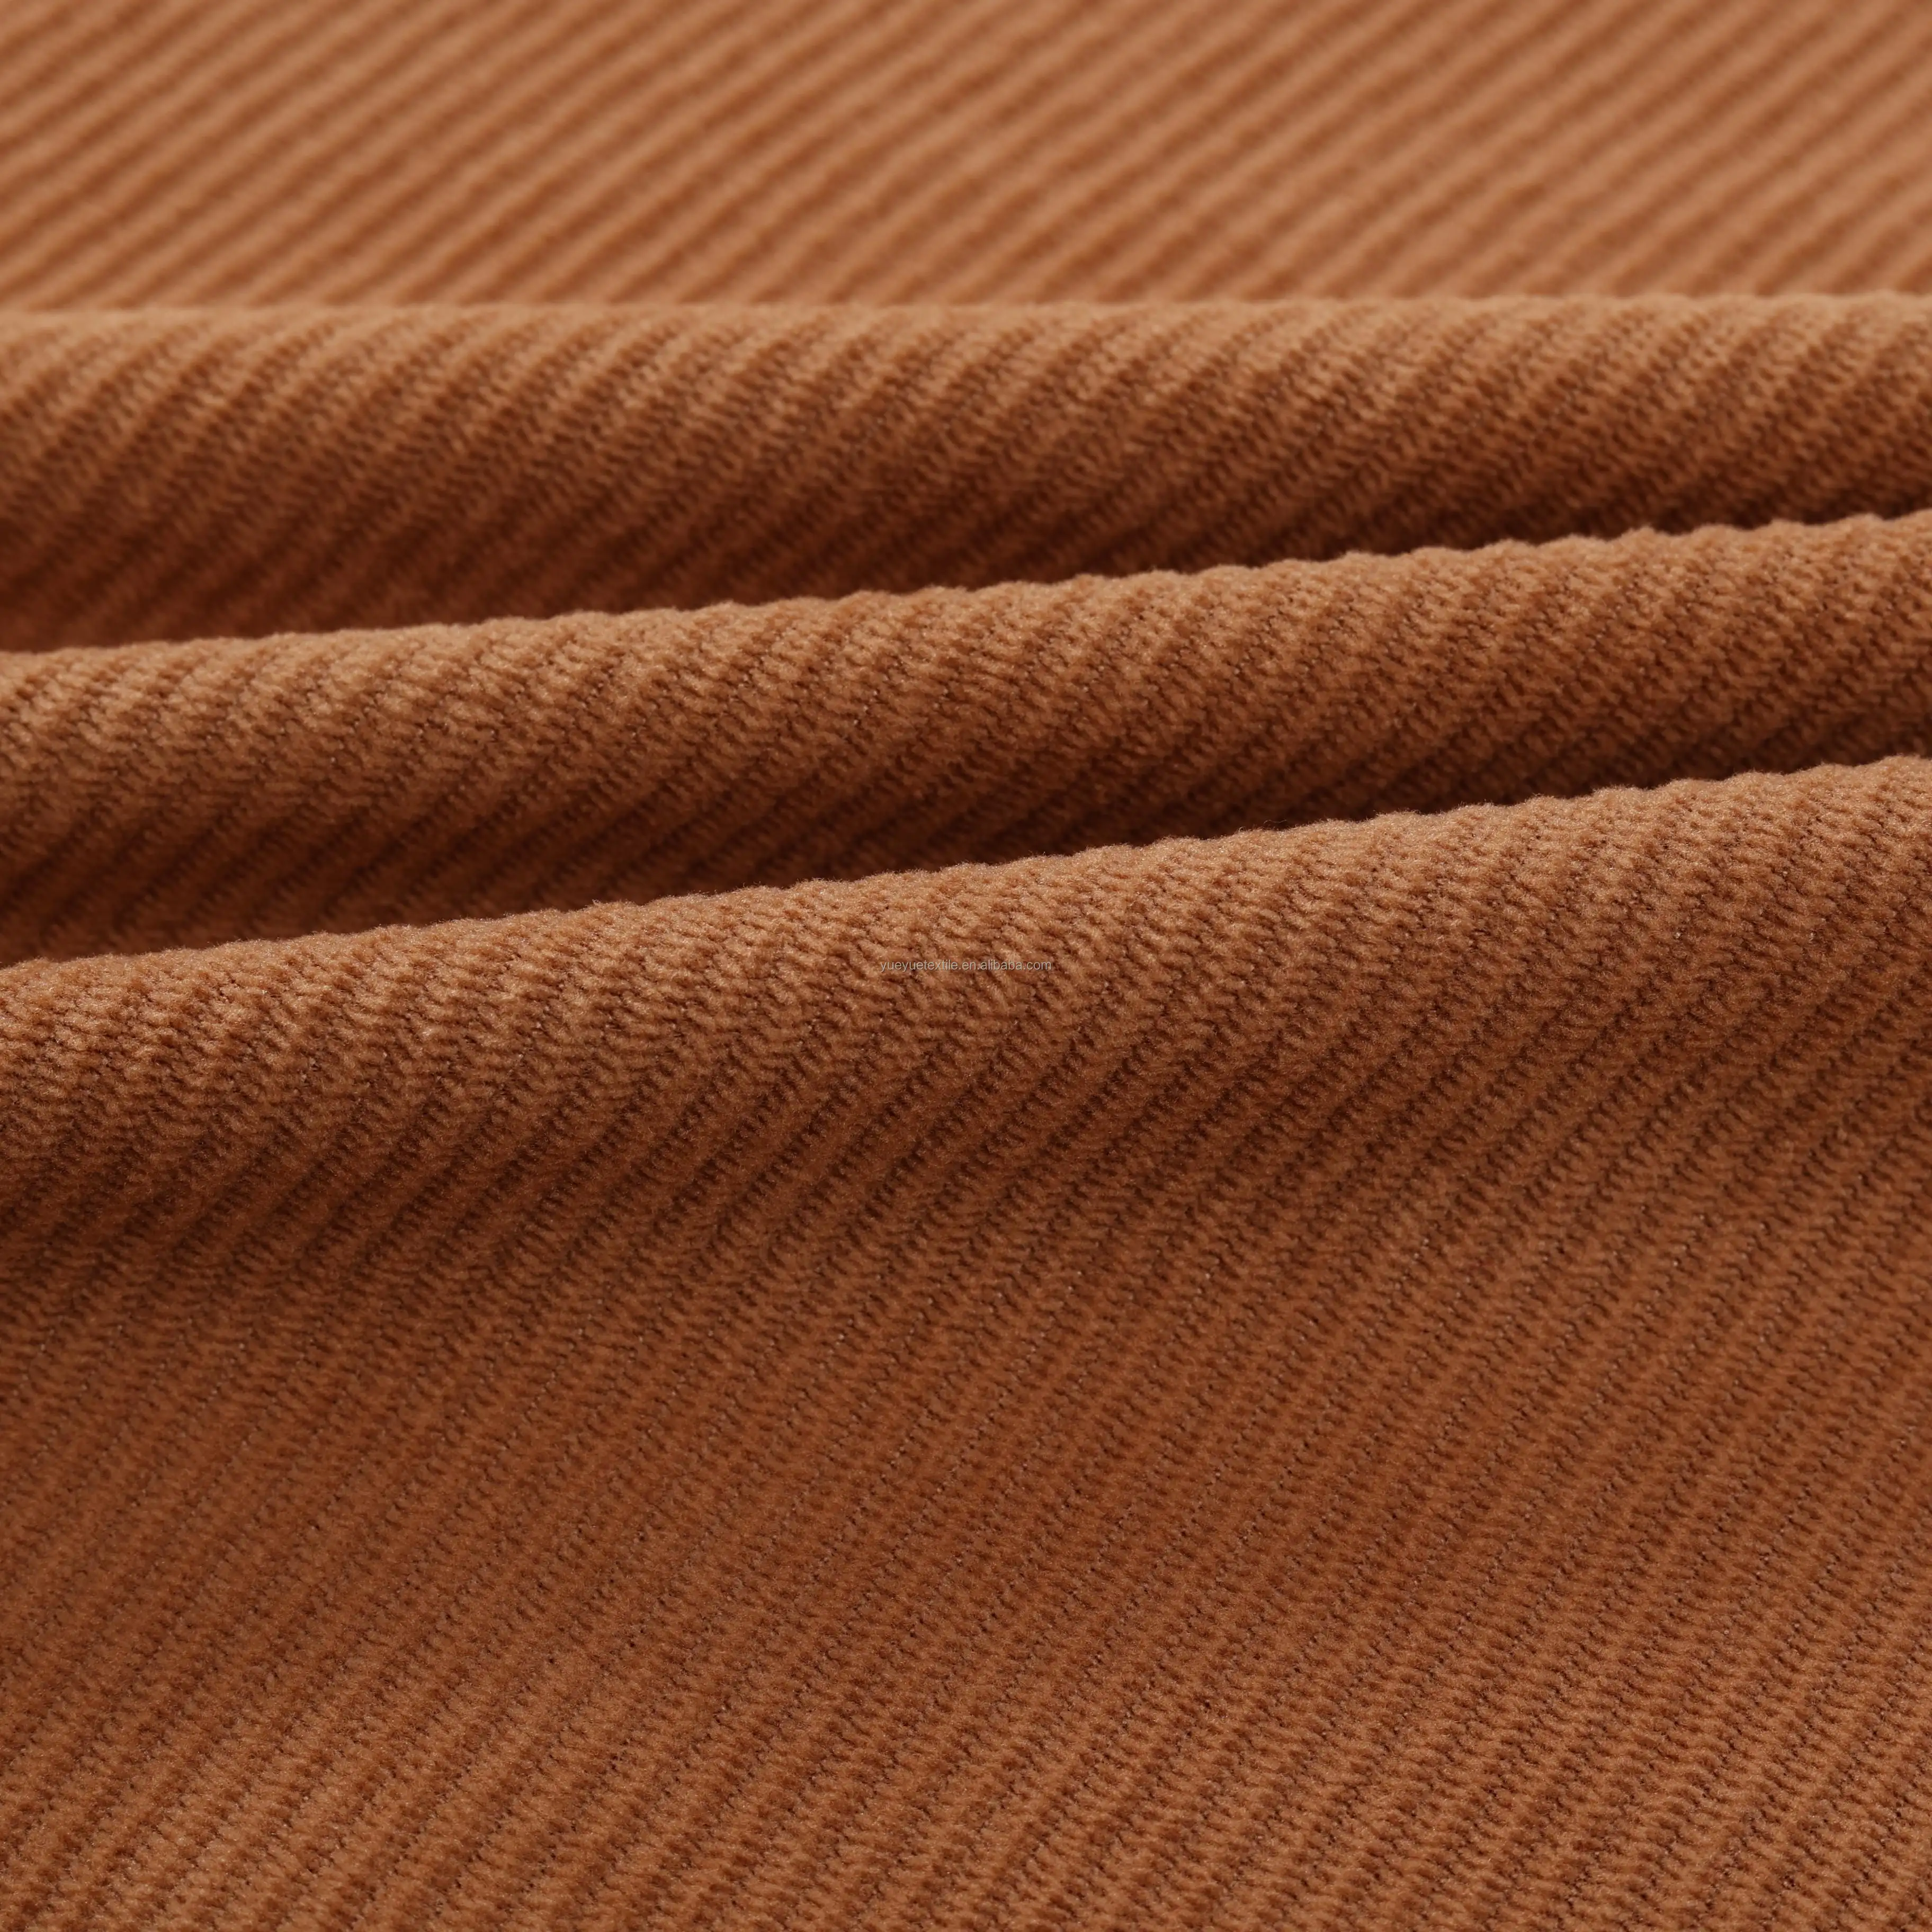 Toptan orta-wale Polyester naylon karışımı kadife 8 wale kadife kumaşlar için kanepe, etekler, pantolon, pantolon, döşeme ve yastıklar